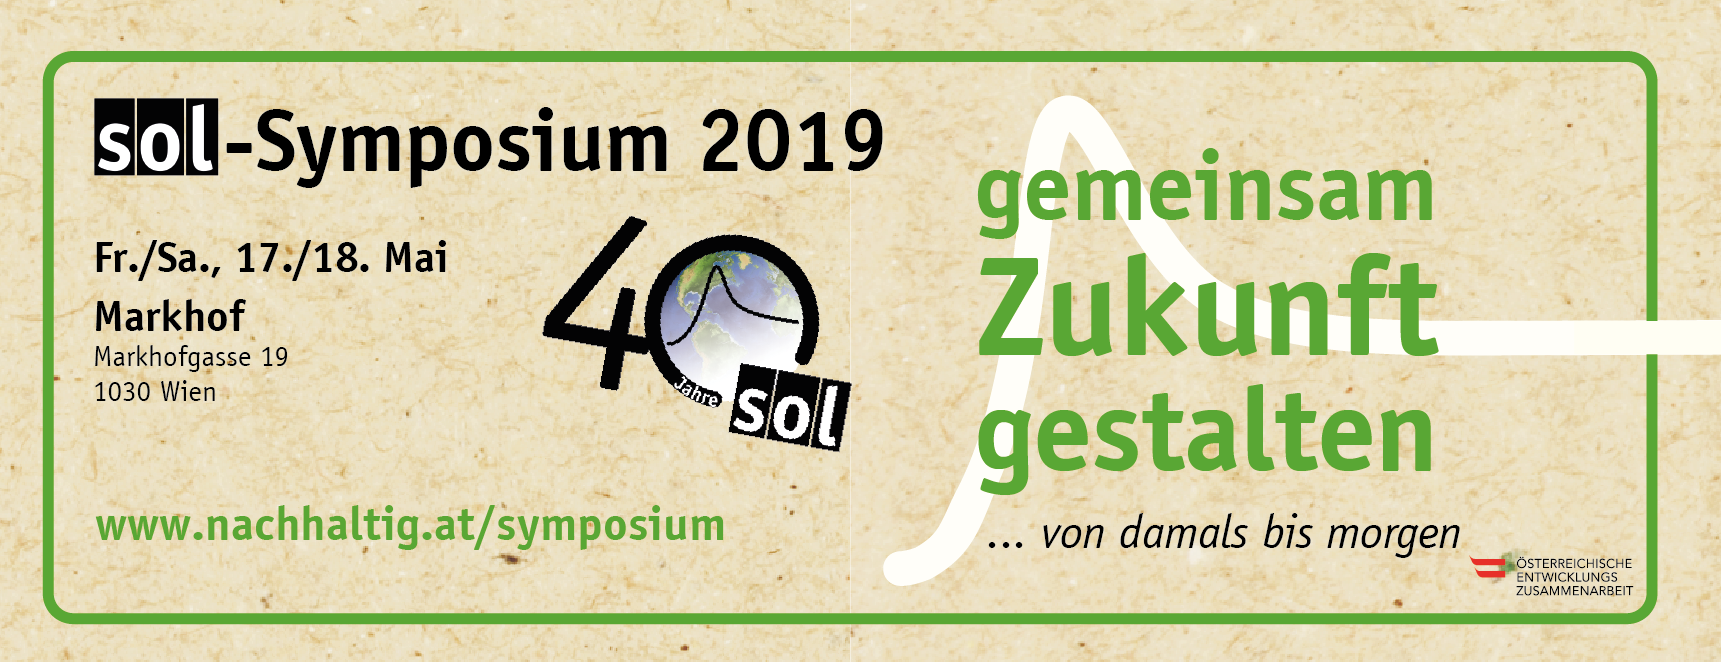 SOL-Symposium 2019